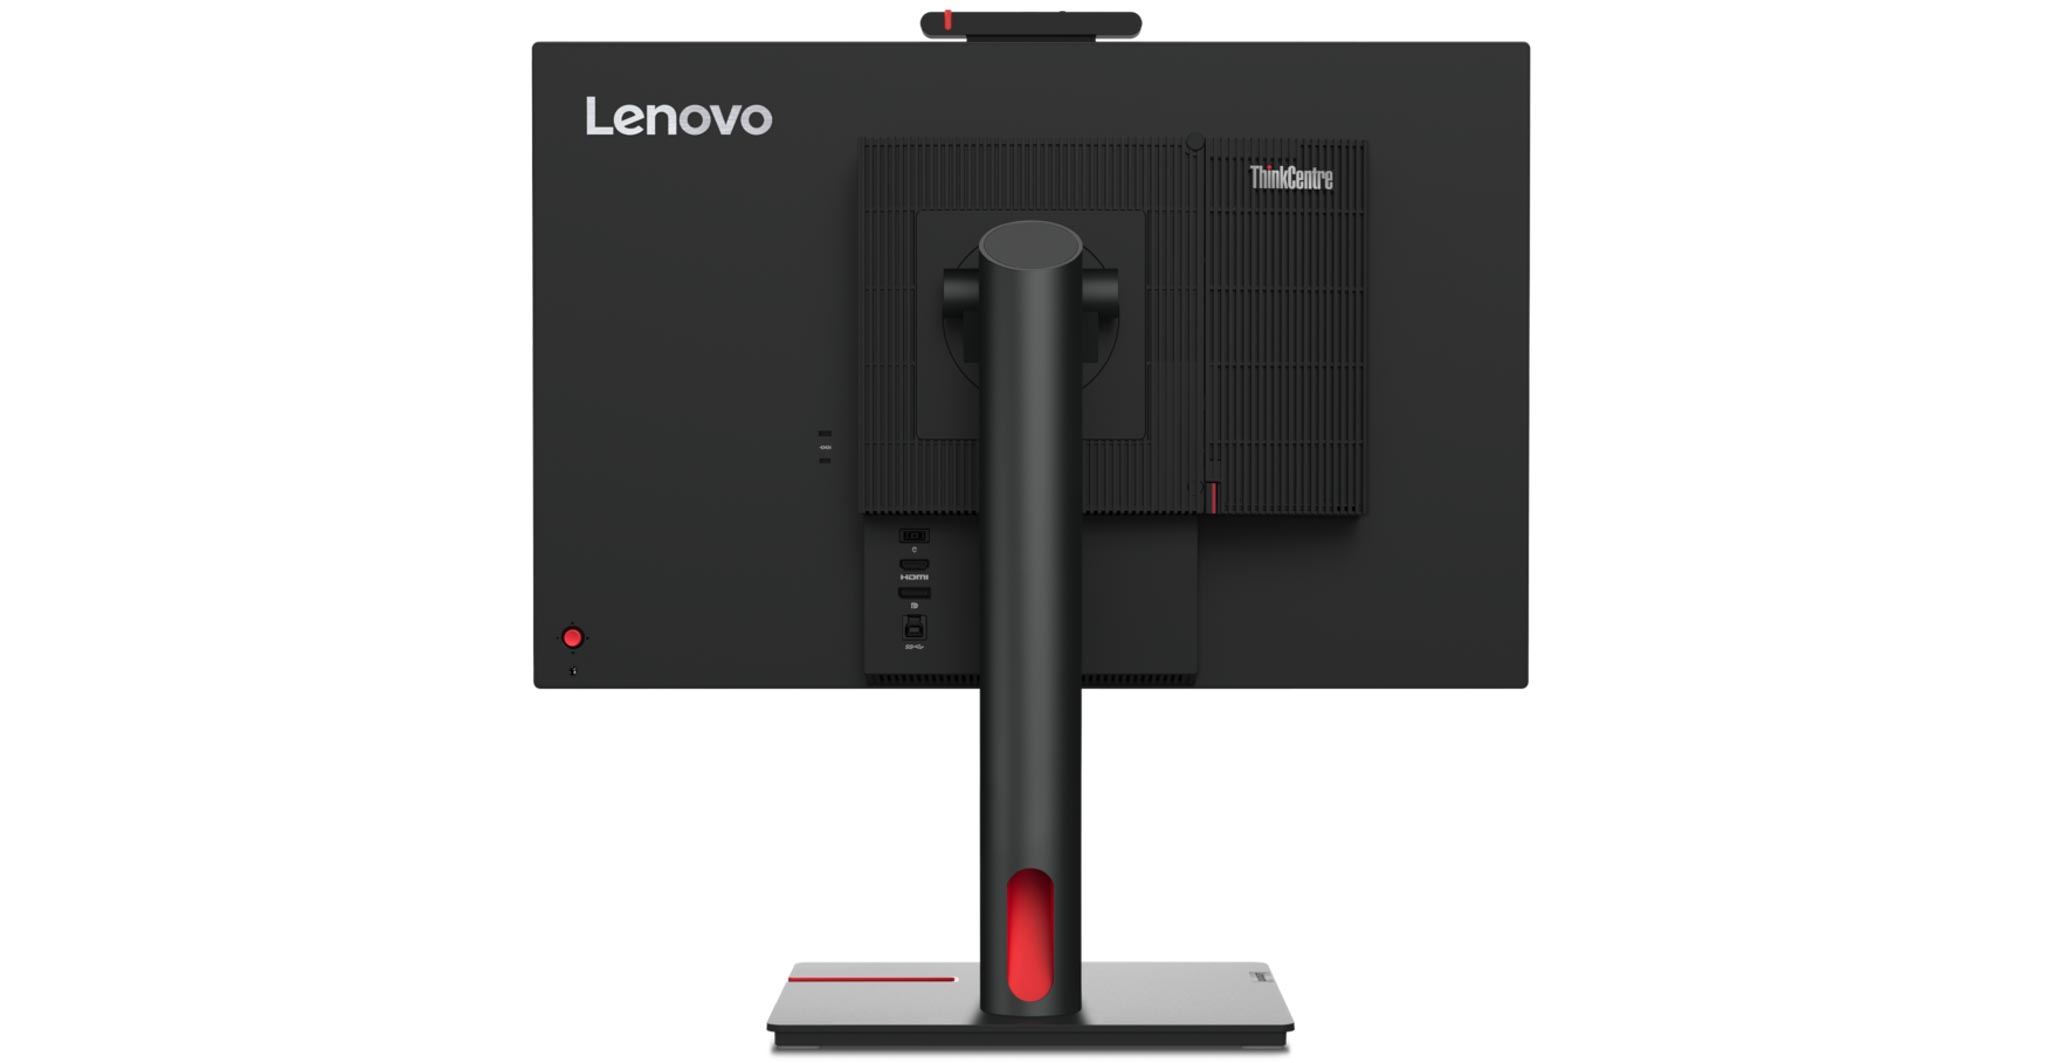 Lenovo giới thiệu loạt giải pháp PC mới nhất nhằm thúc đẩy quá trình chuyển đổi số trong môi trường làm việc hybrid